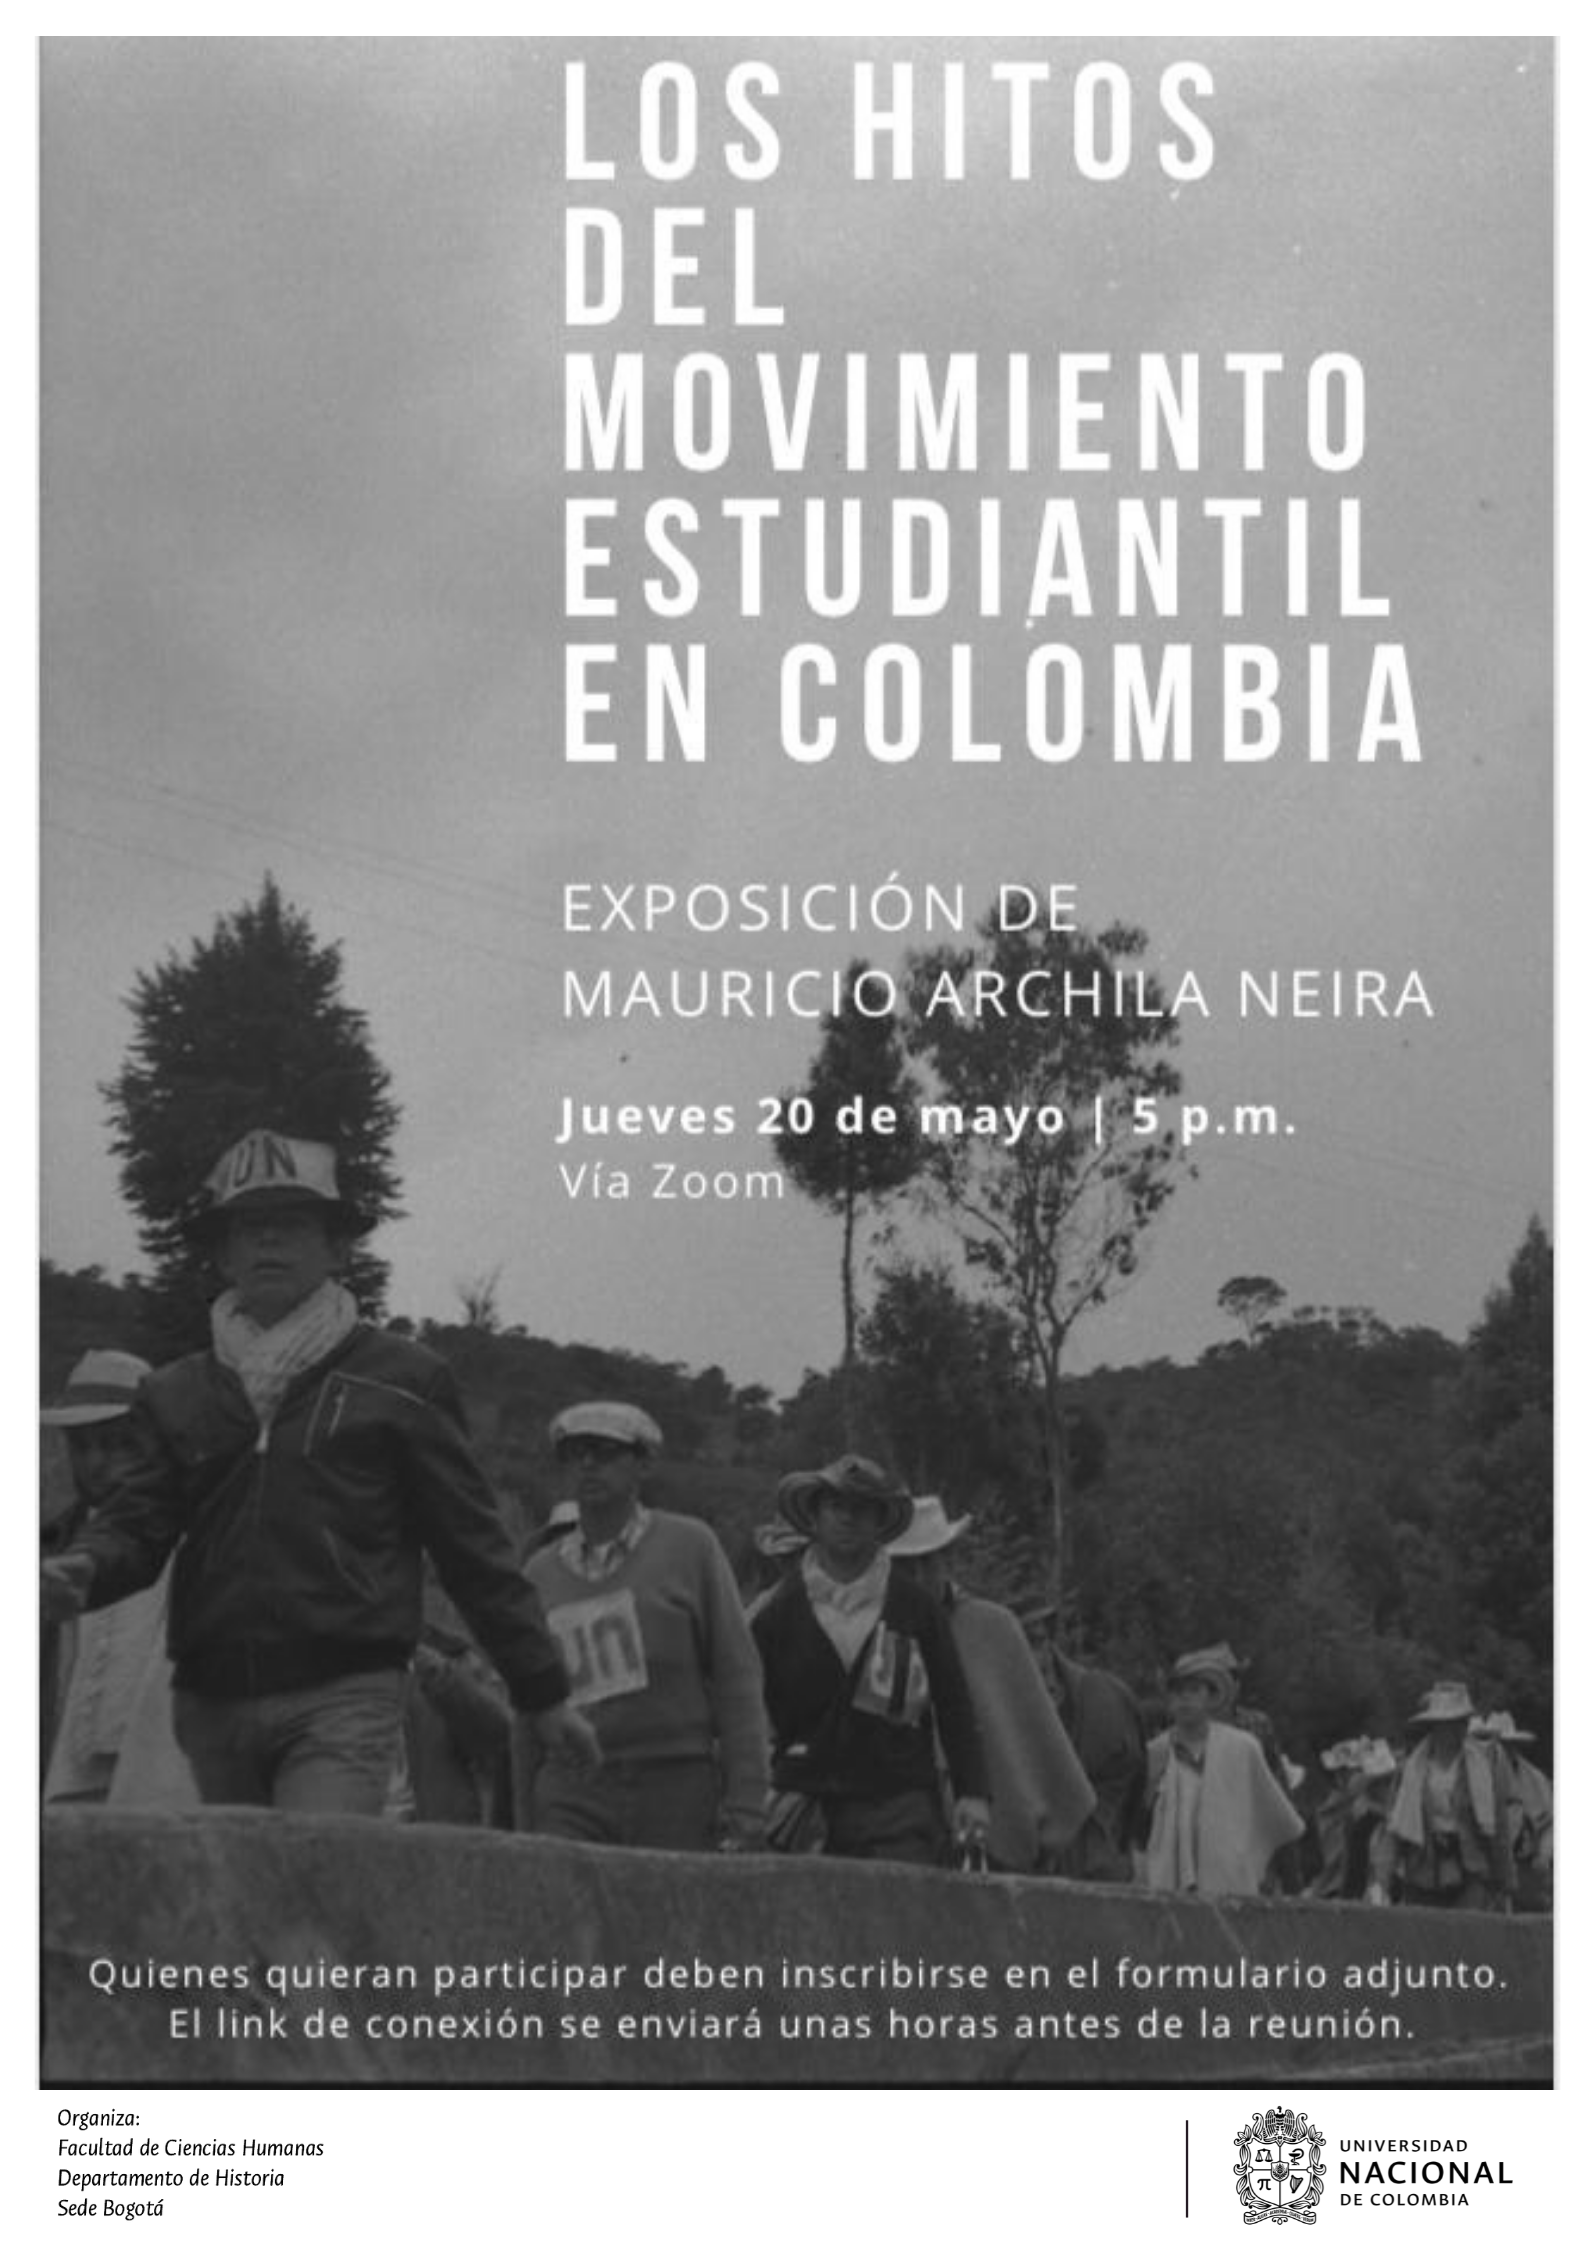 Los hitos del movimiento estudiantil en Colombia